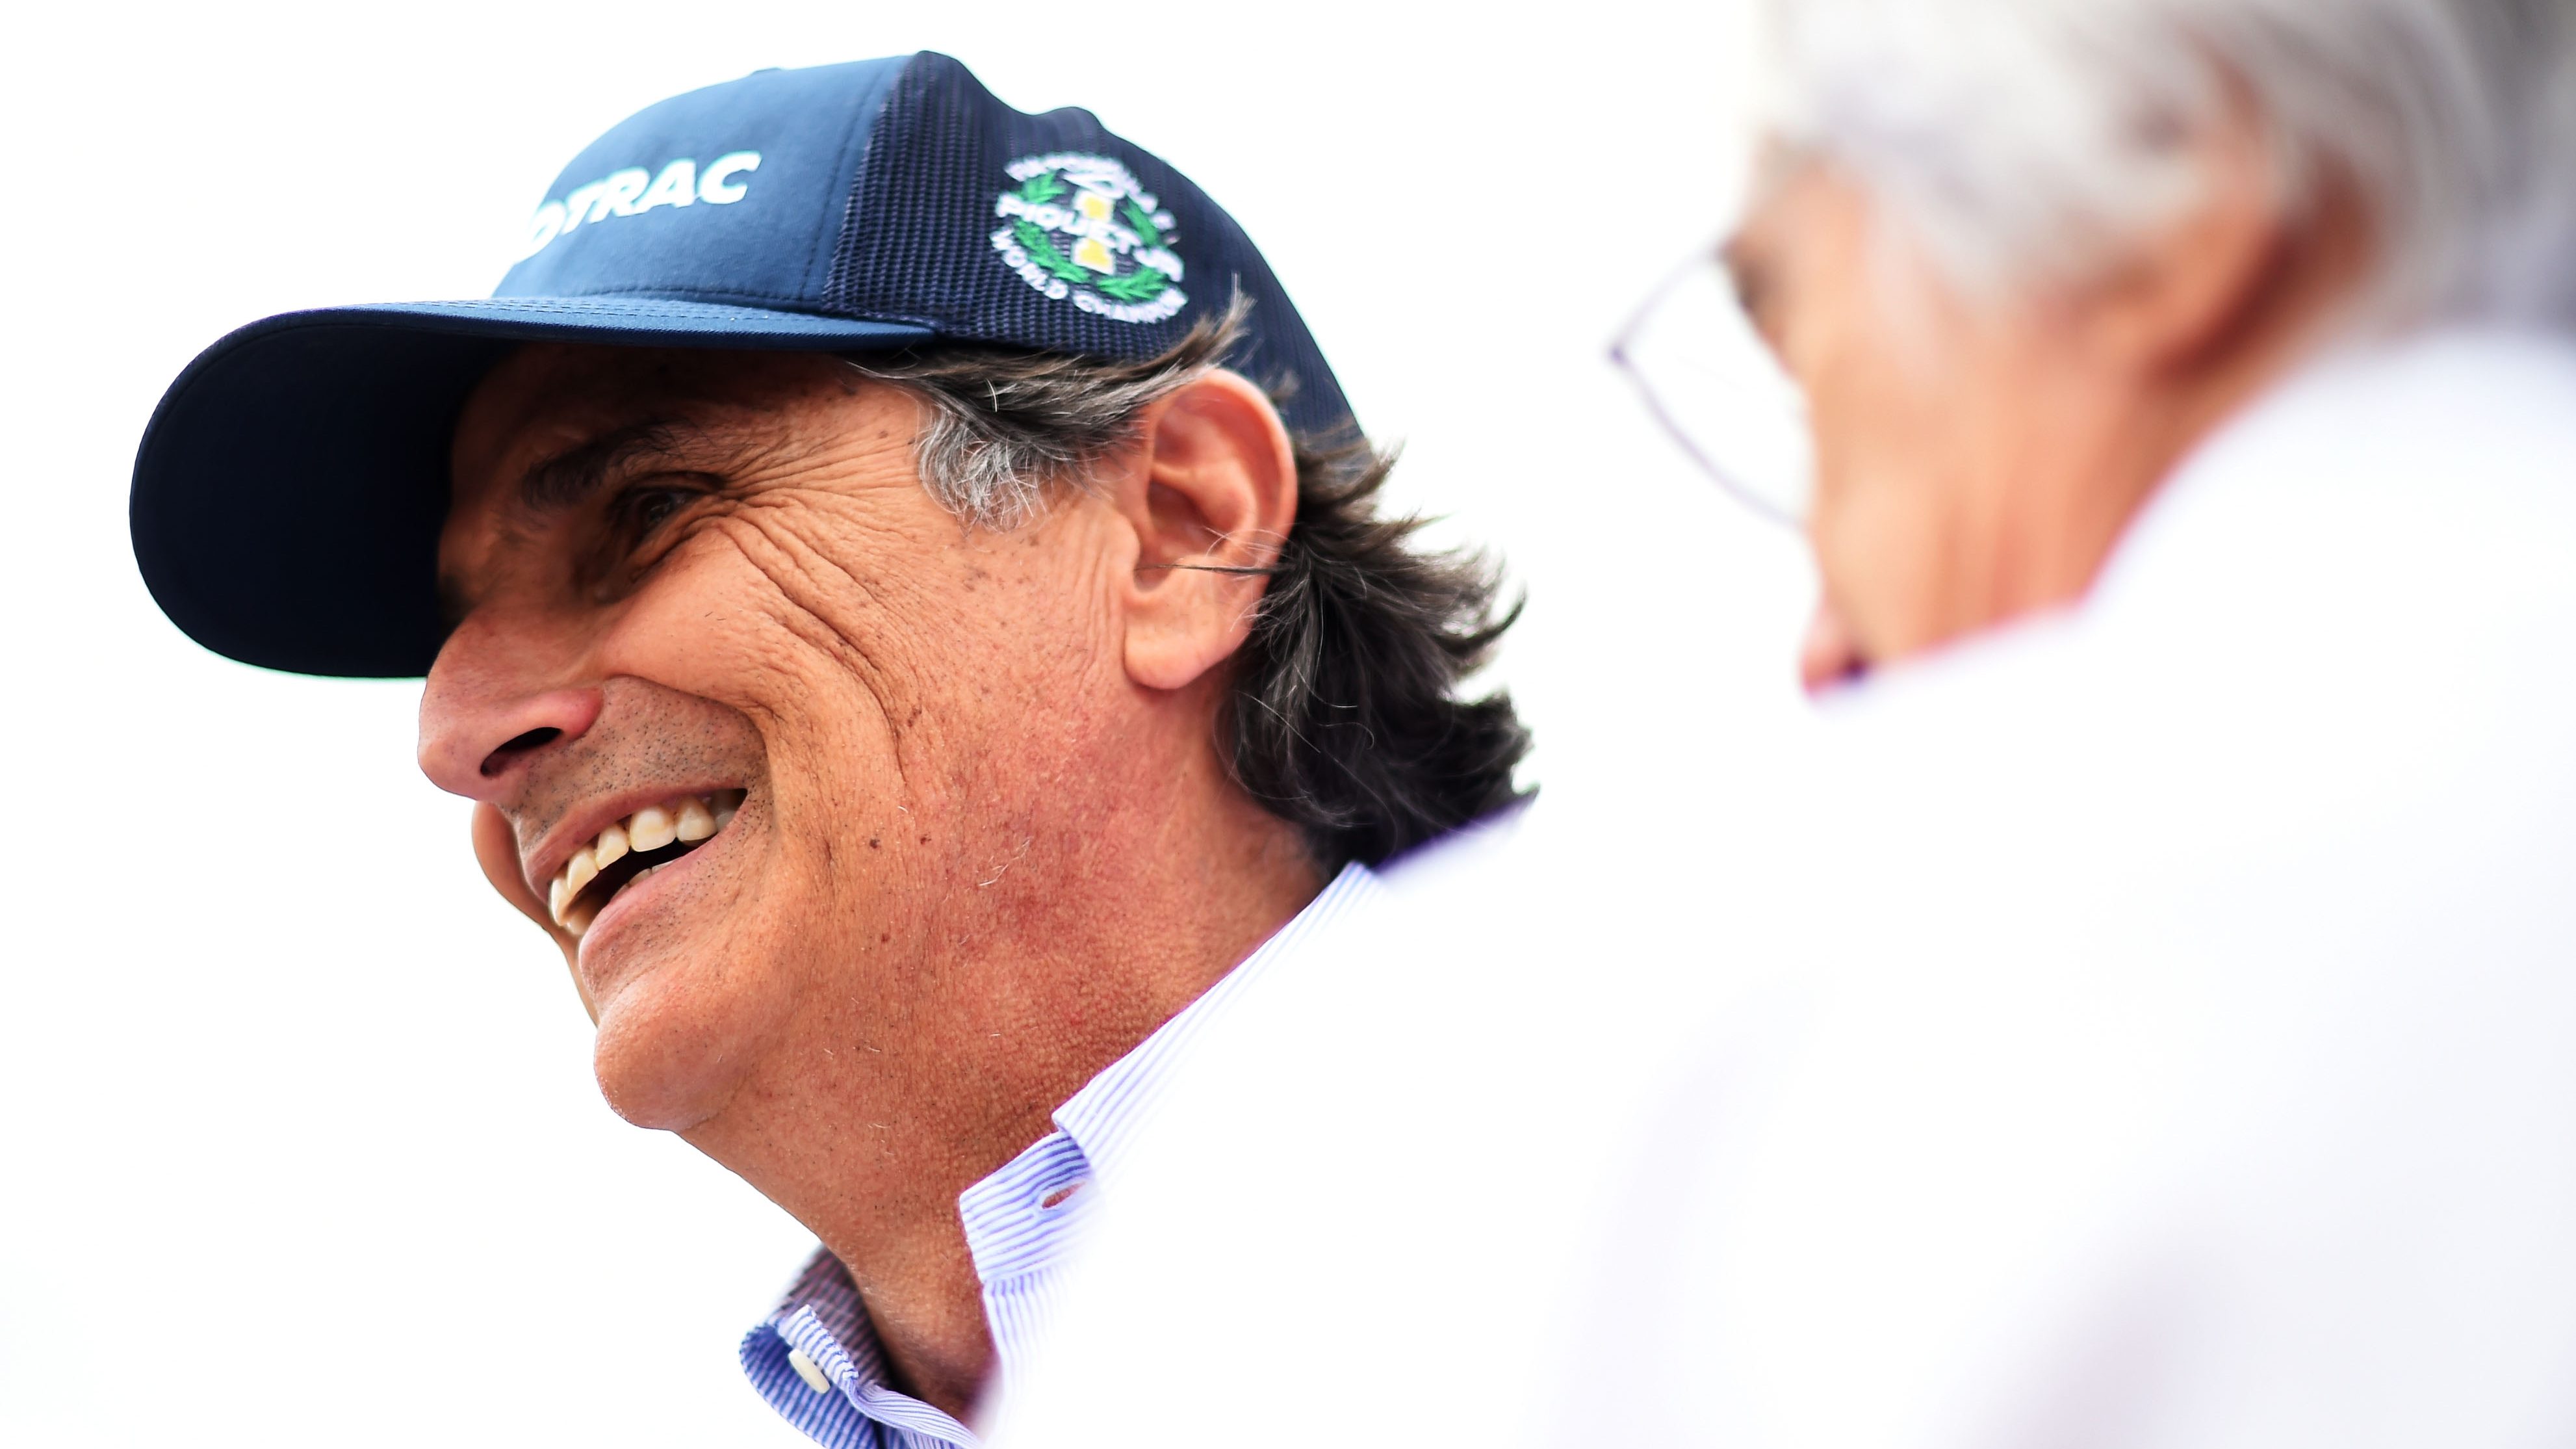 Bocsánatot kért Hamiltontól a rasszista kijelentéssel vádolt Piquet